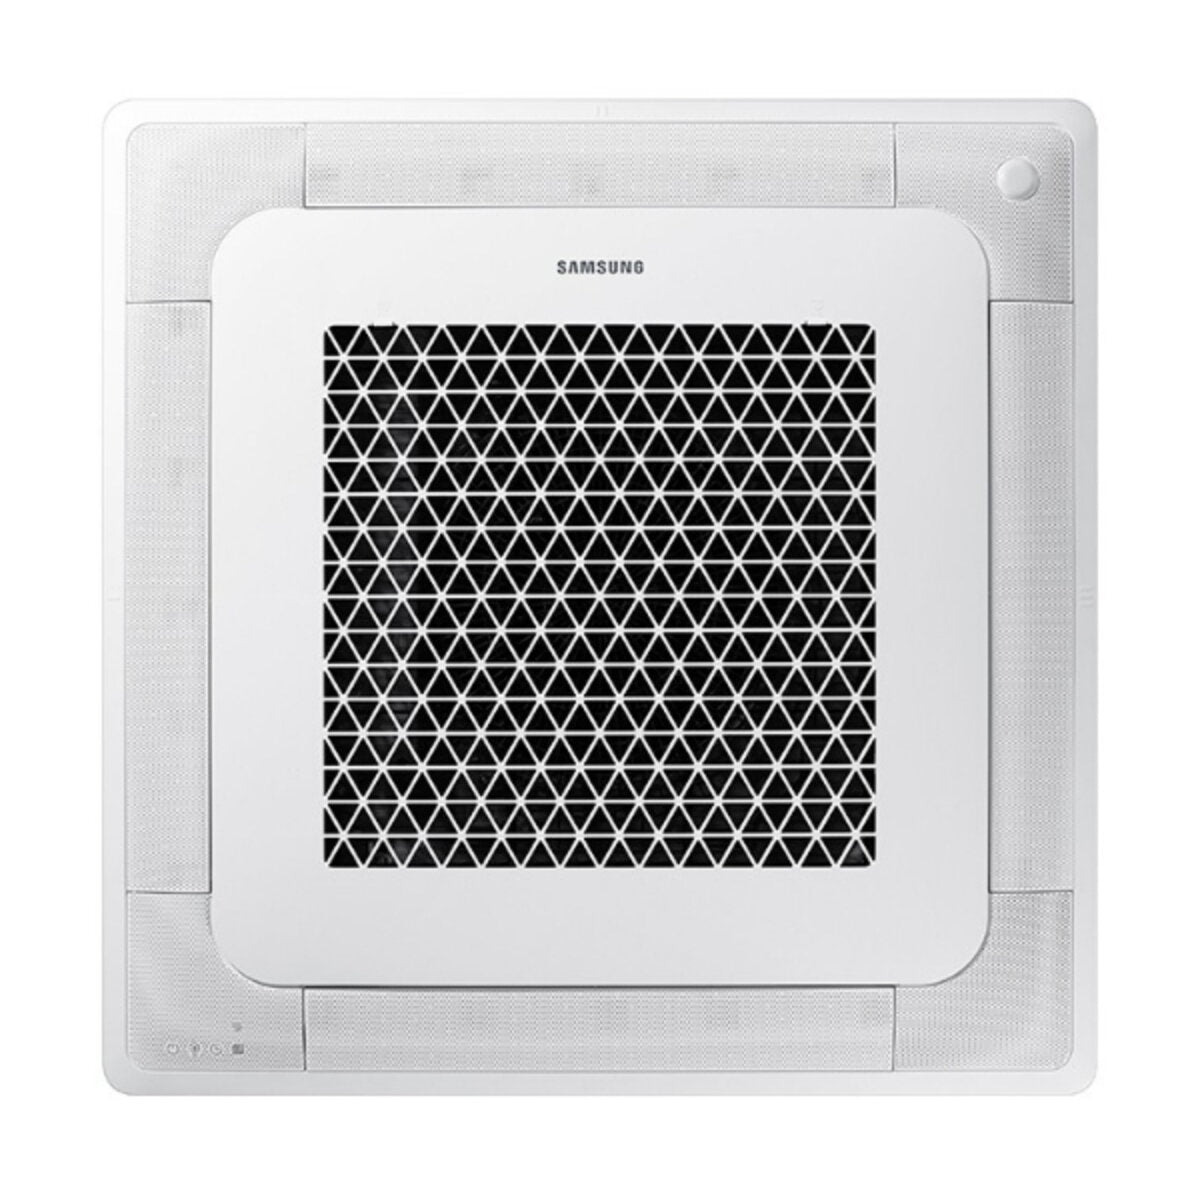 Samsung air conditioner Cassette Windfree 4 ways trial split 7000 + 9000 + 9000 BTU inverter A +++ outdoor unit 5.2 kW